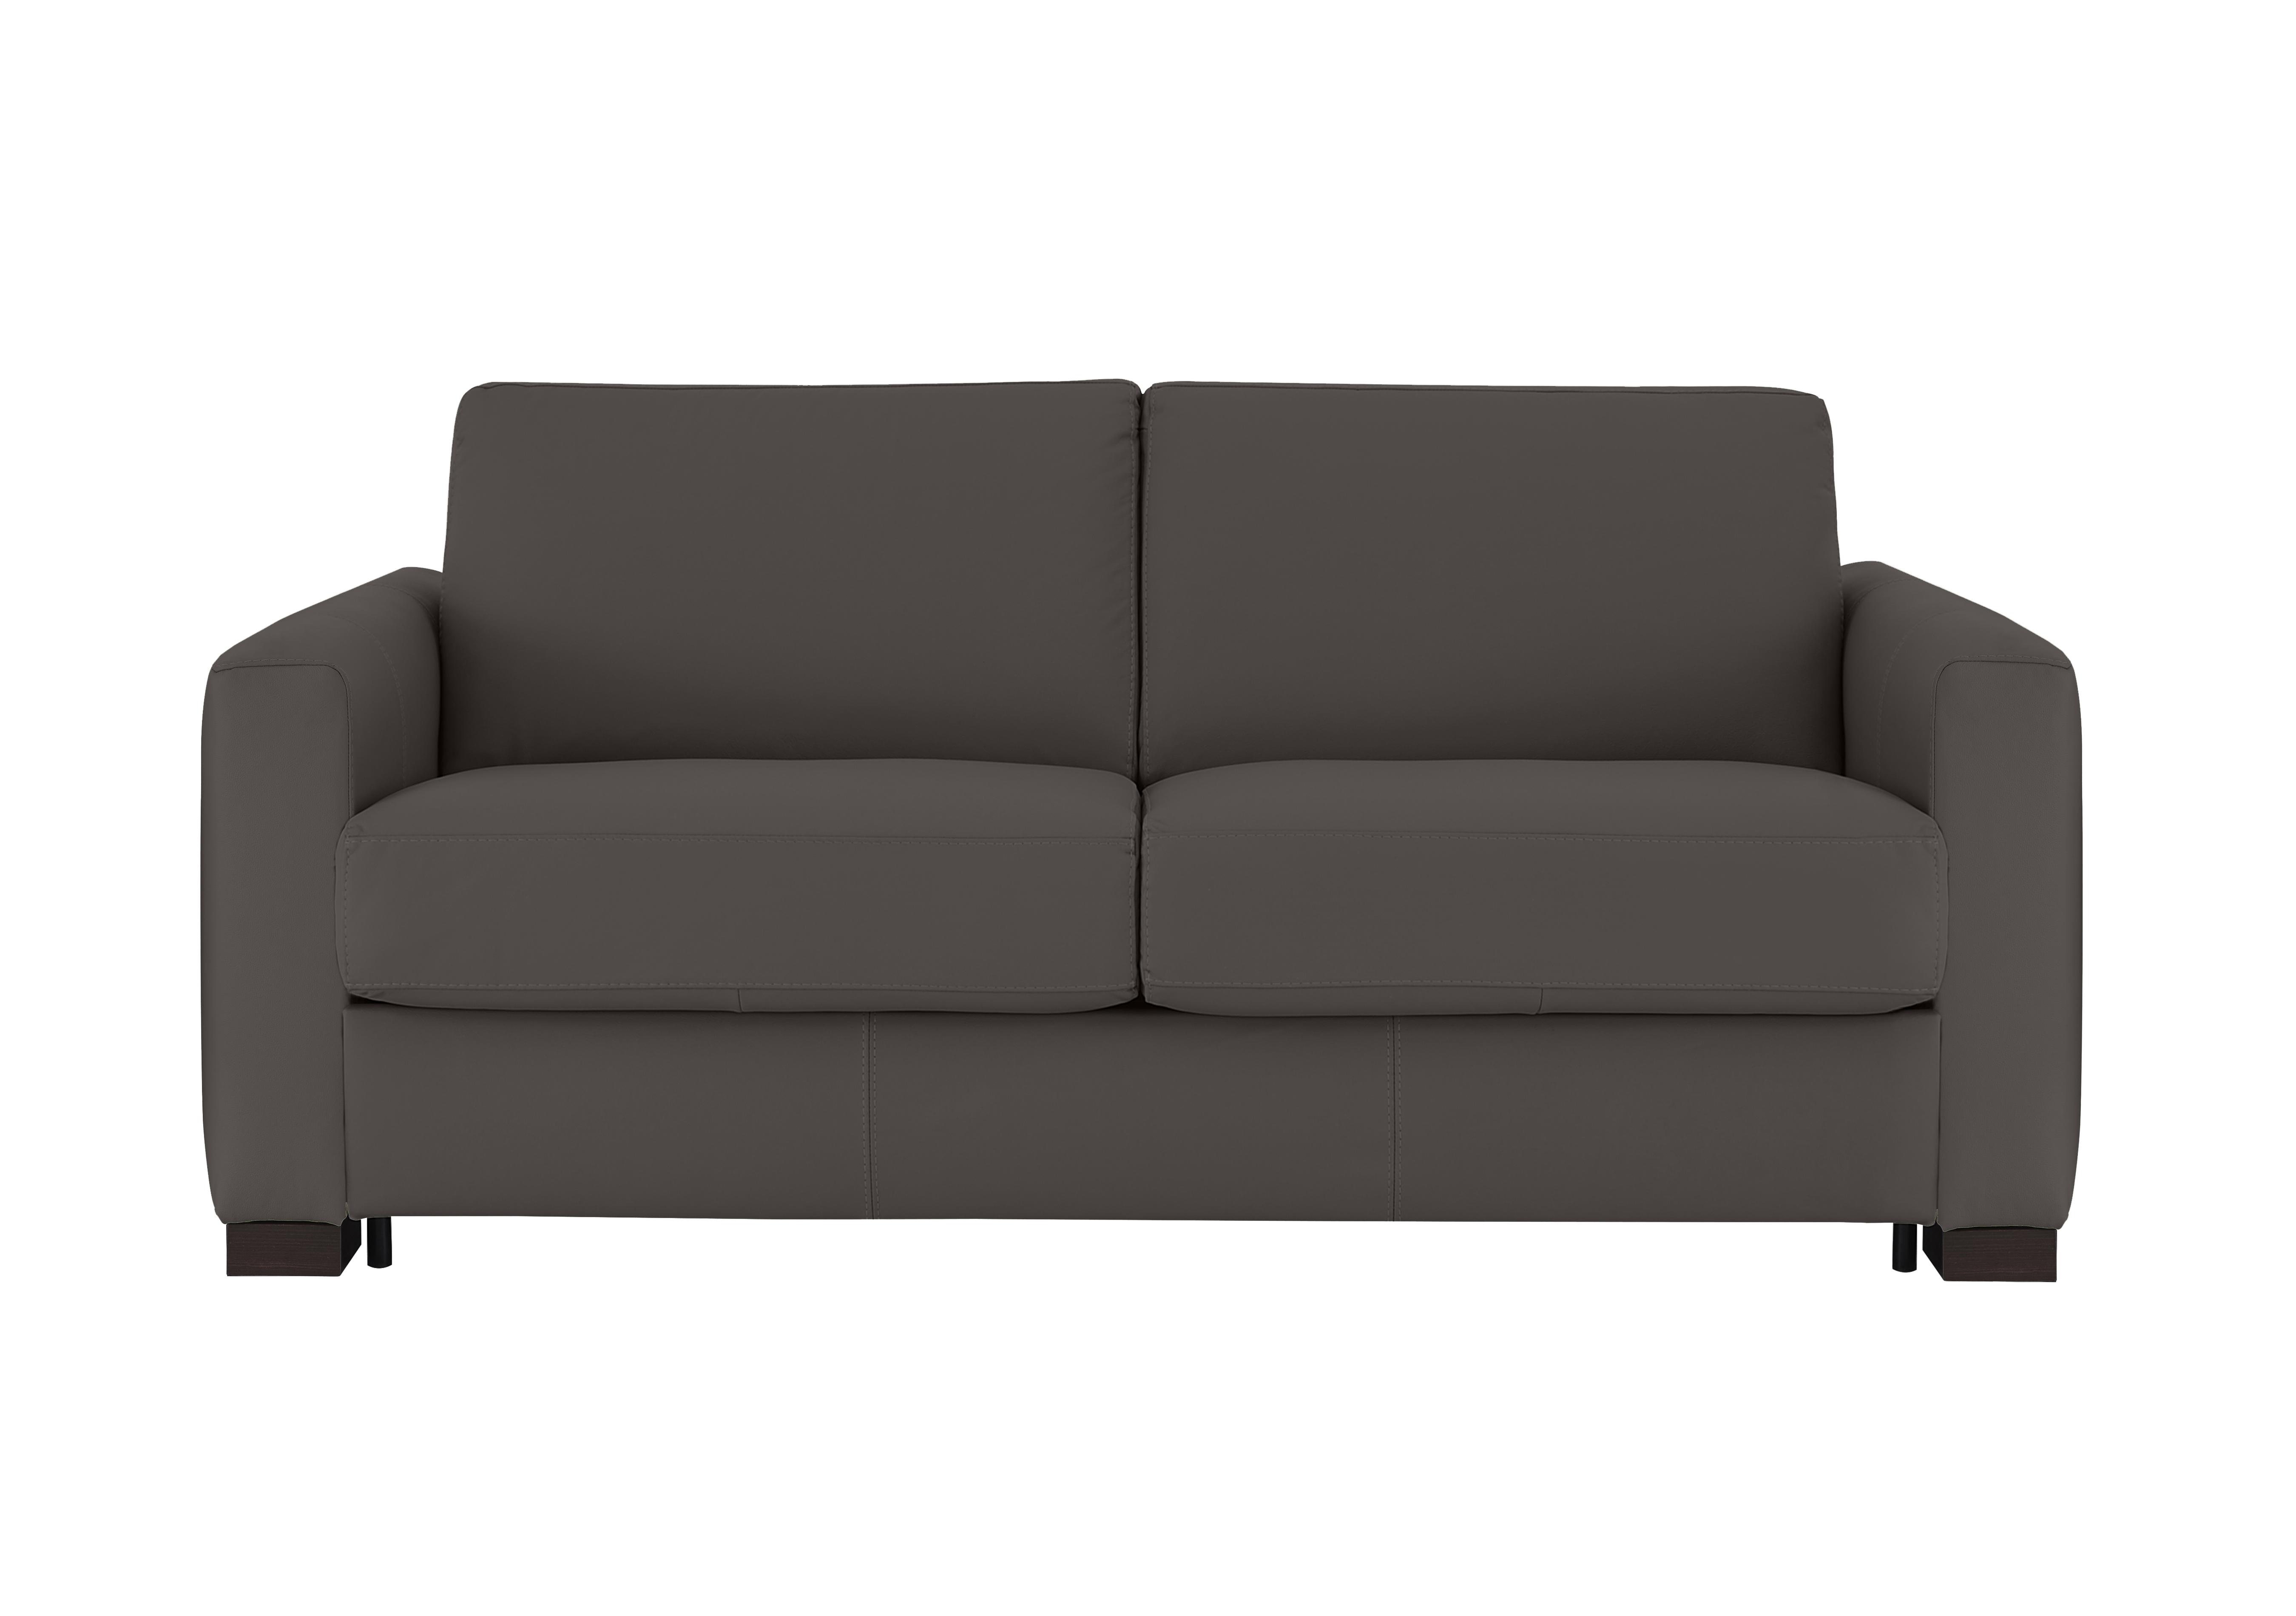 Alcova 2.5 Seater Leather Sofa Bed with Box Arms in Torello Grigio Scuro 327 on Furniture Village